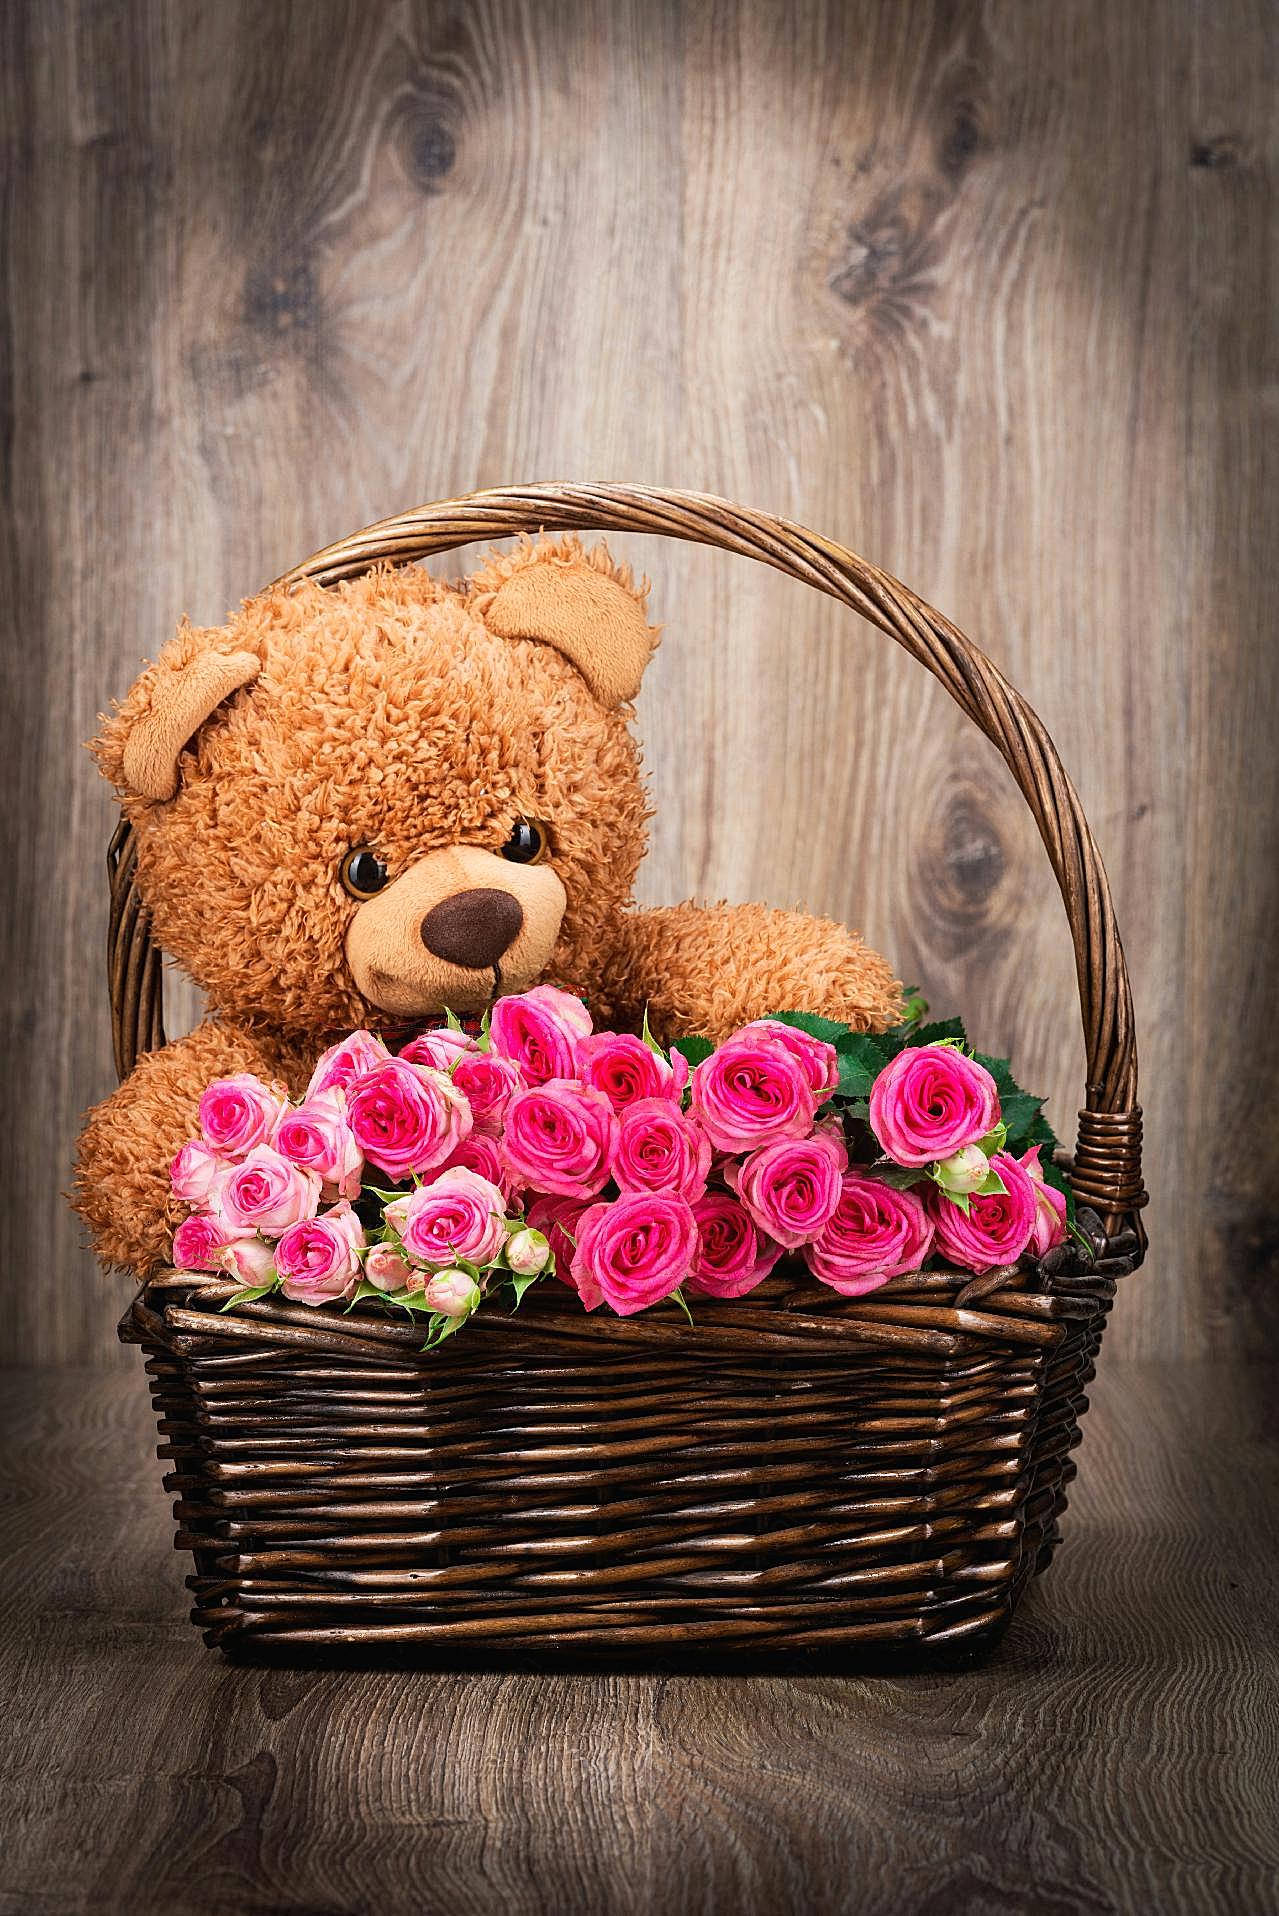 花篮里的泰迪熊和鲜花图片高清摄影